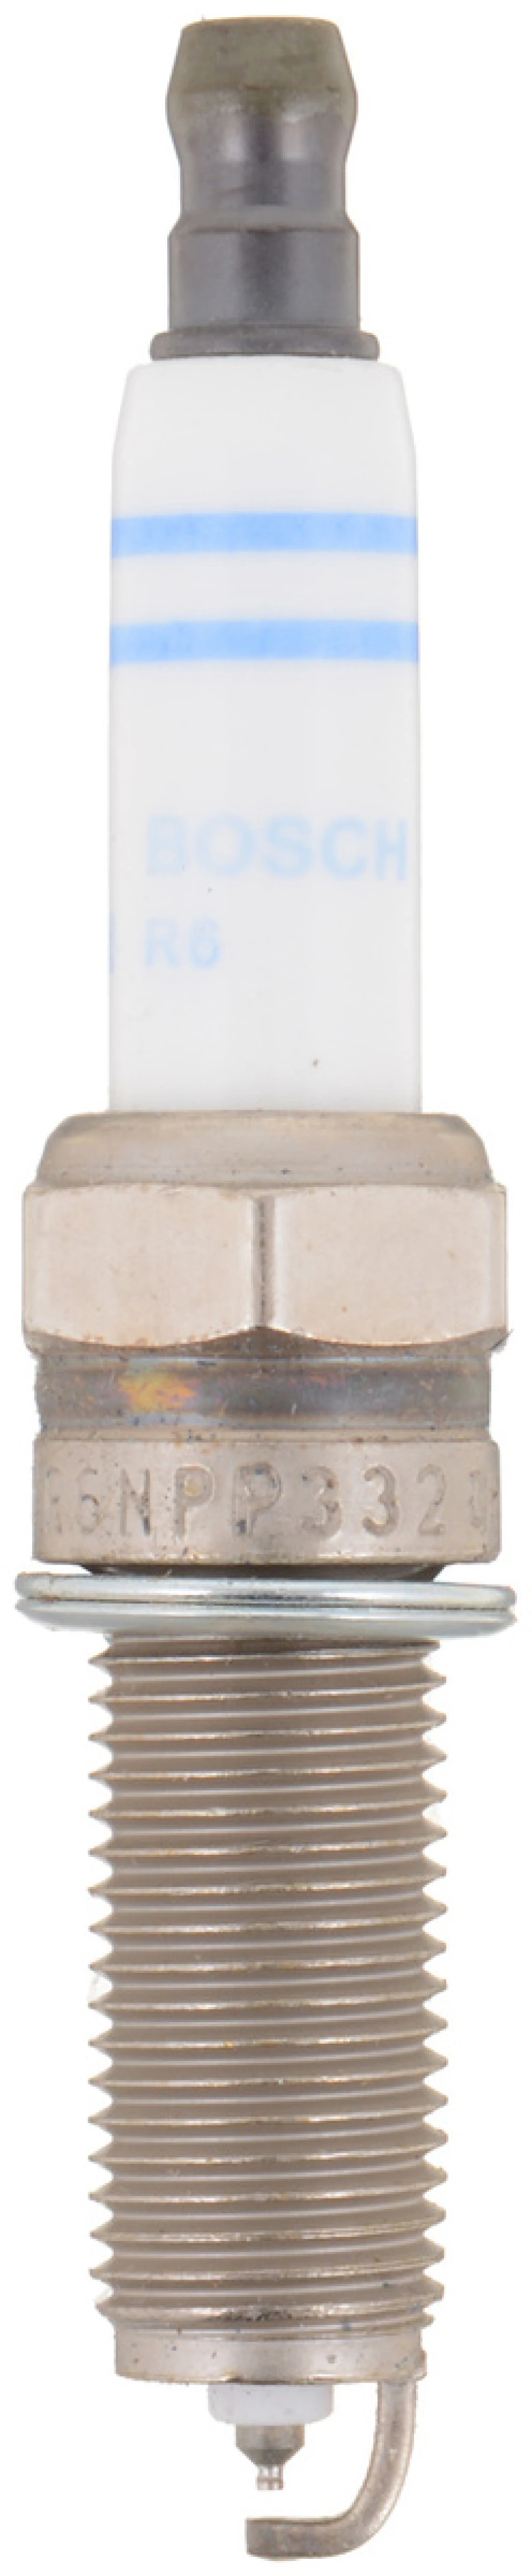 Свеча зажигания Bosch 0 242 140 512 (YR6NPP332 0.8)